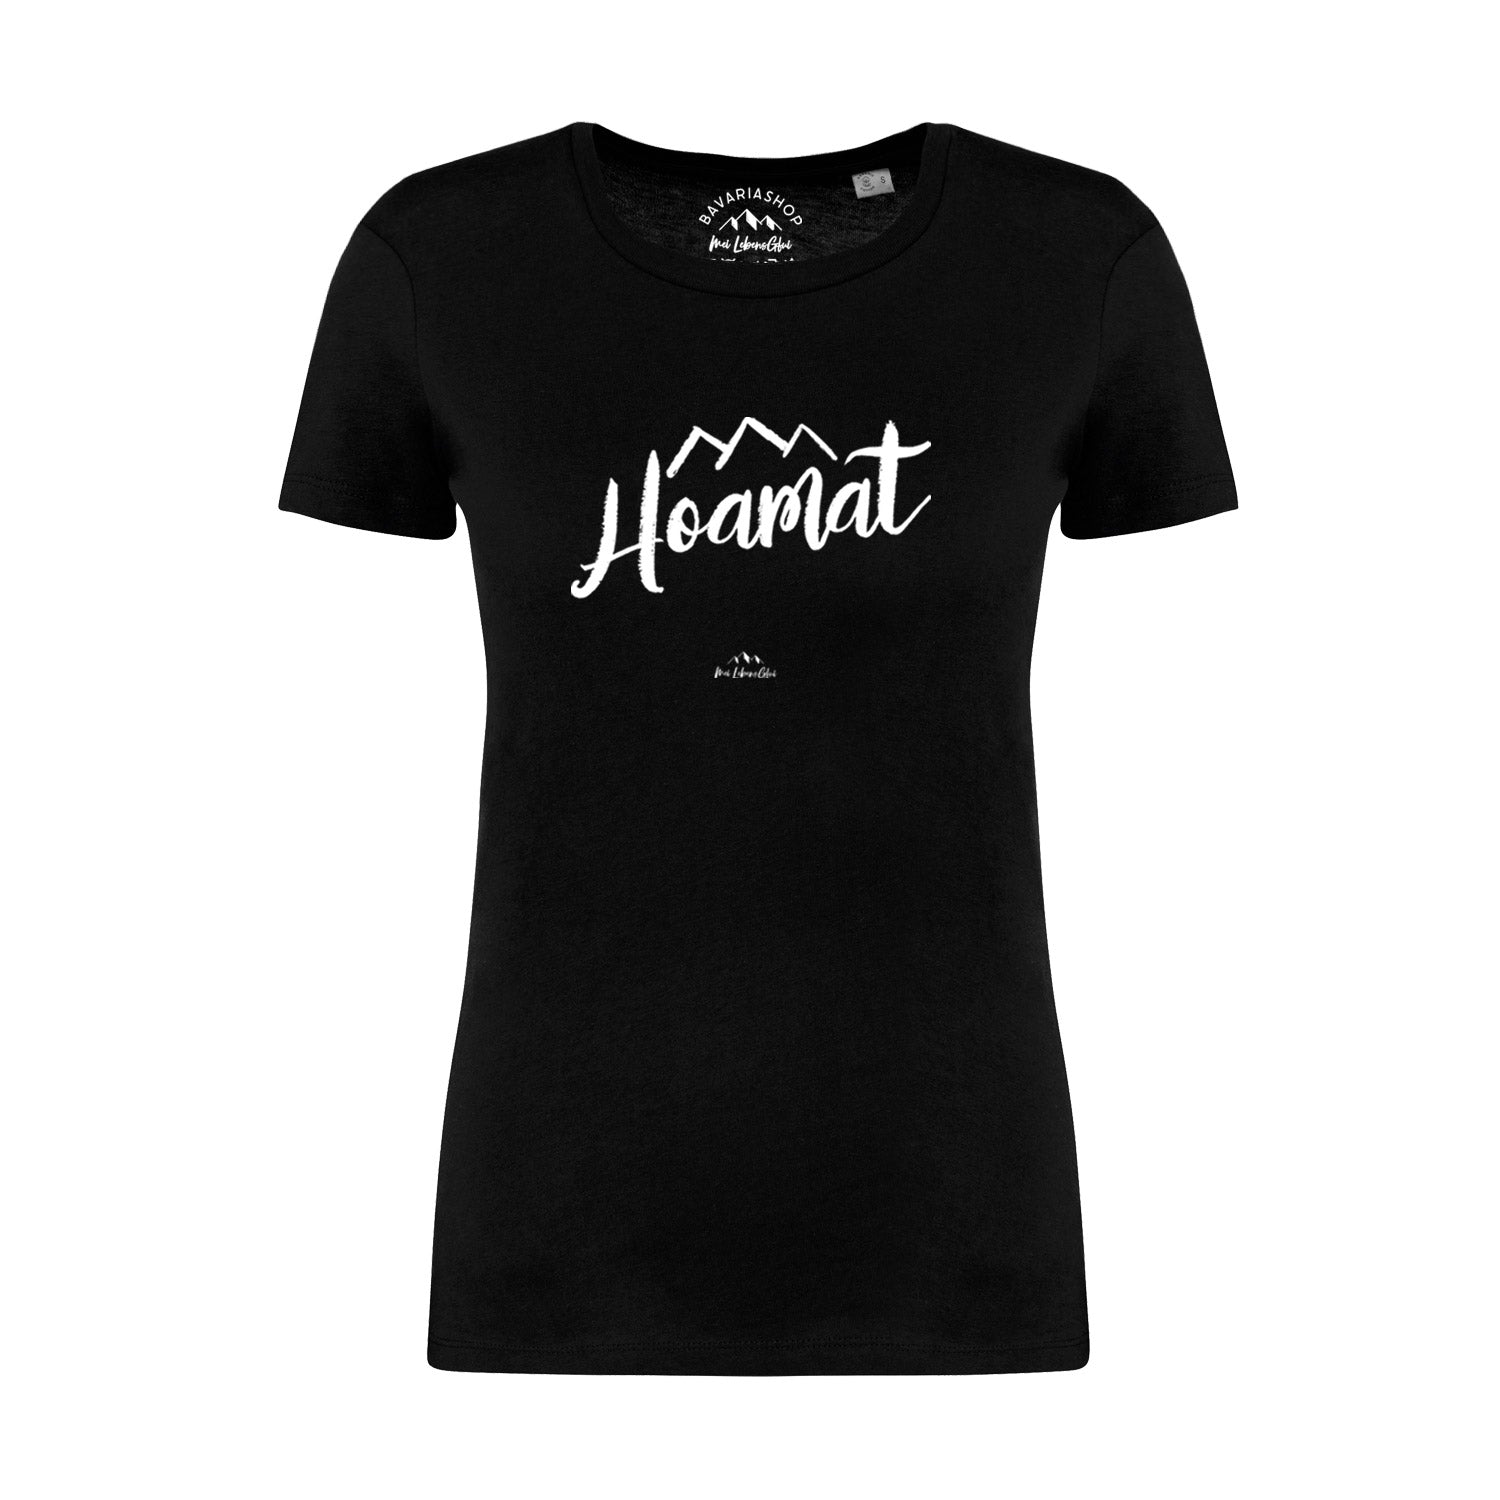 Damen T-Shirt "Hoamat"